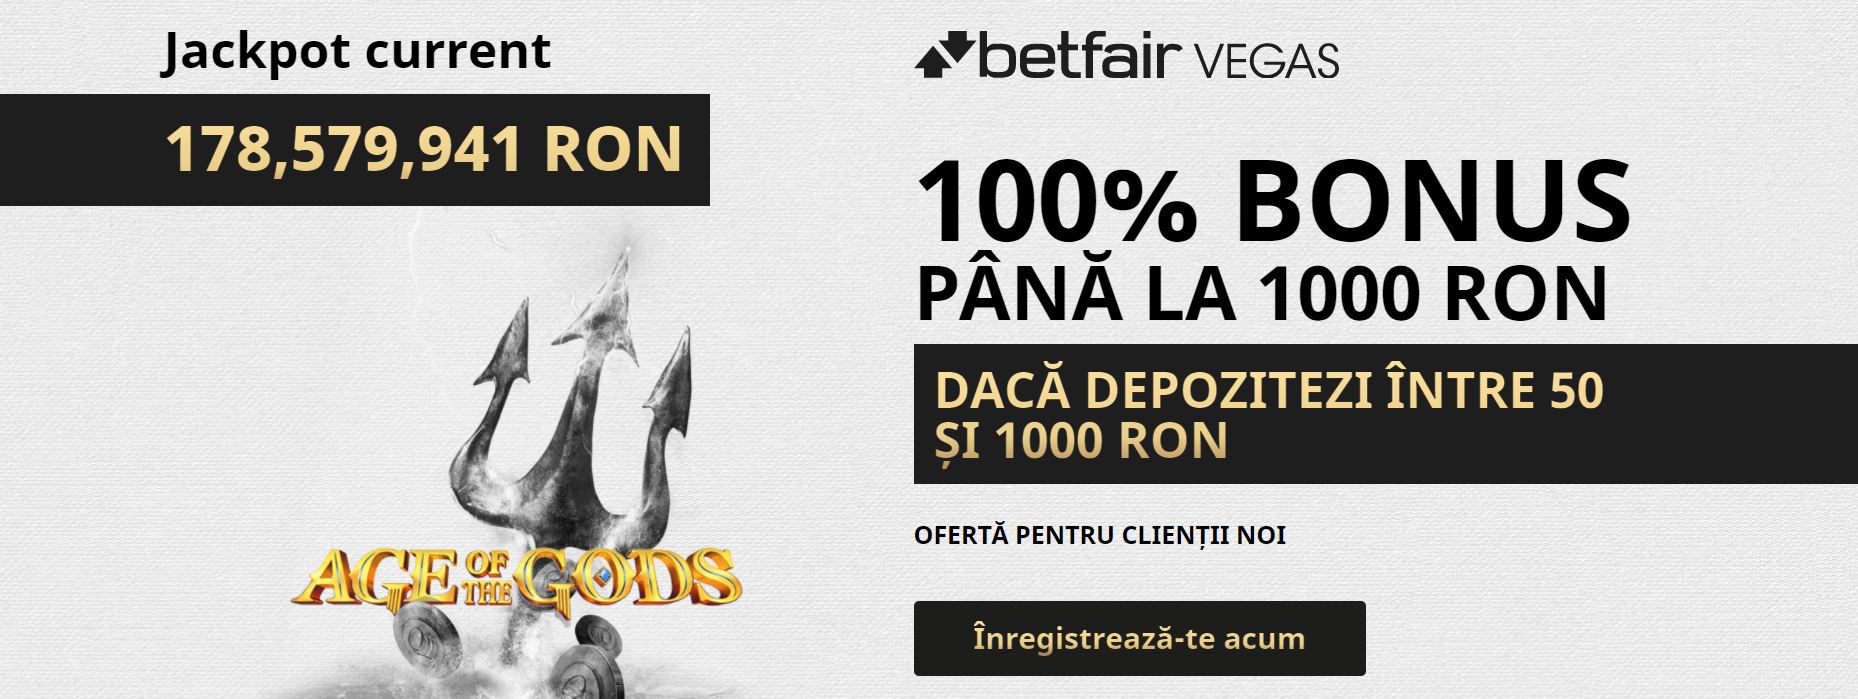 Obtine bonus 100% pana la 1000 RON de la Betfair